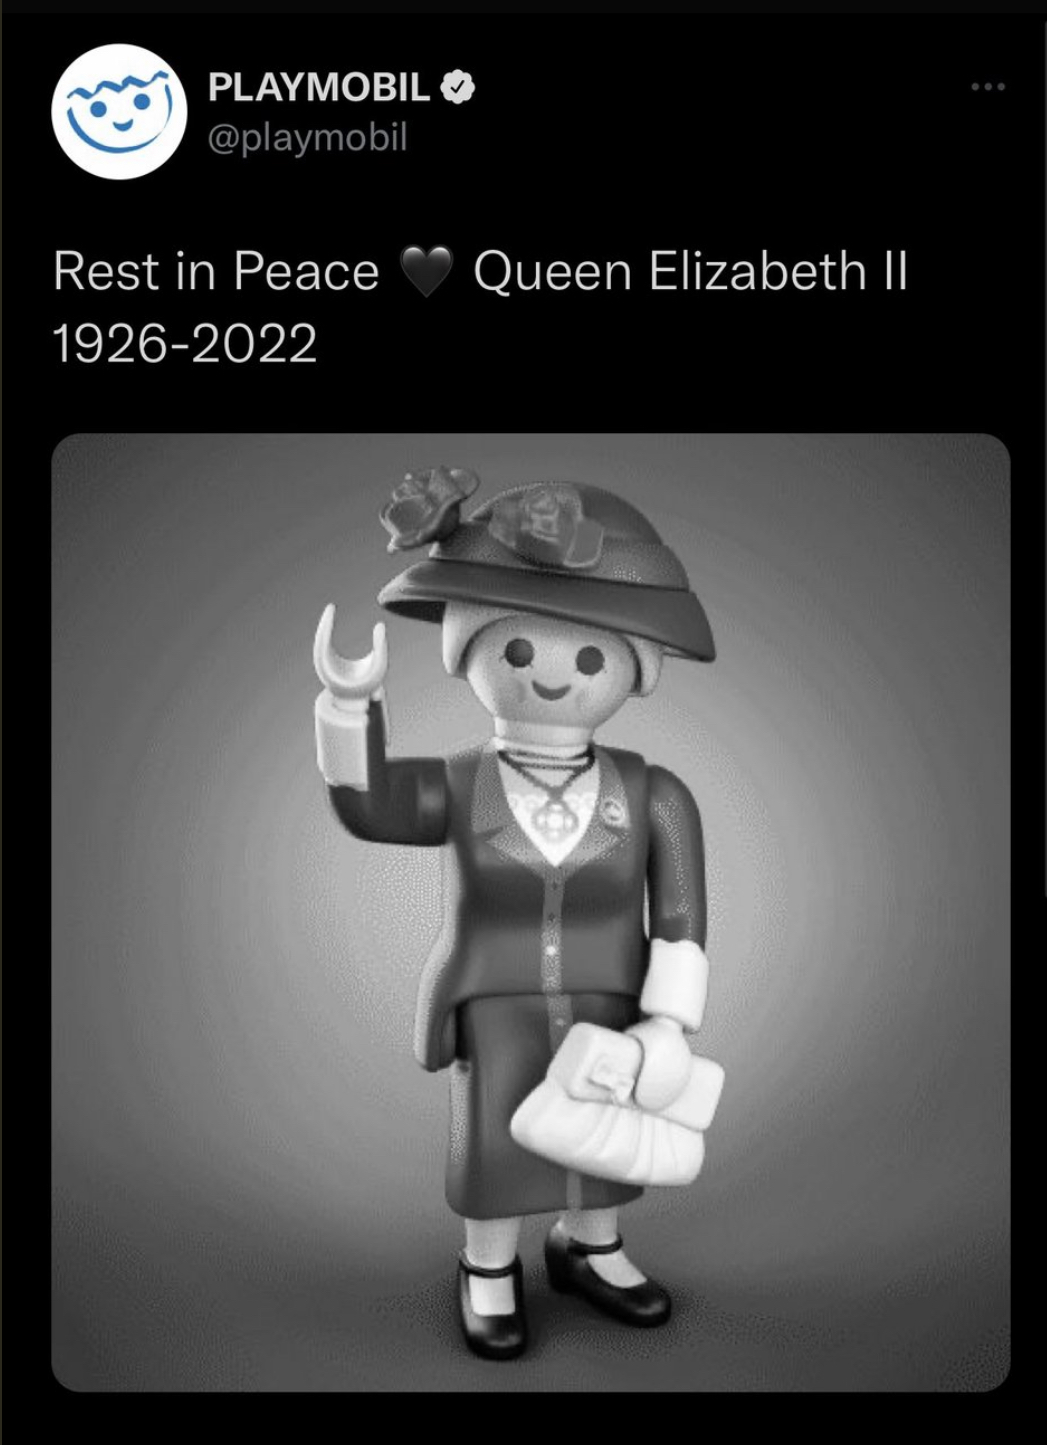 Queen Elizabeth II Death Reactions - playmobil hi gif - Playmobil Rest in Peace 19262022 Queen Elizabeth Ii